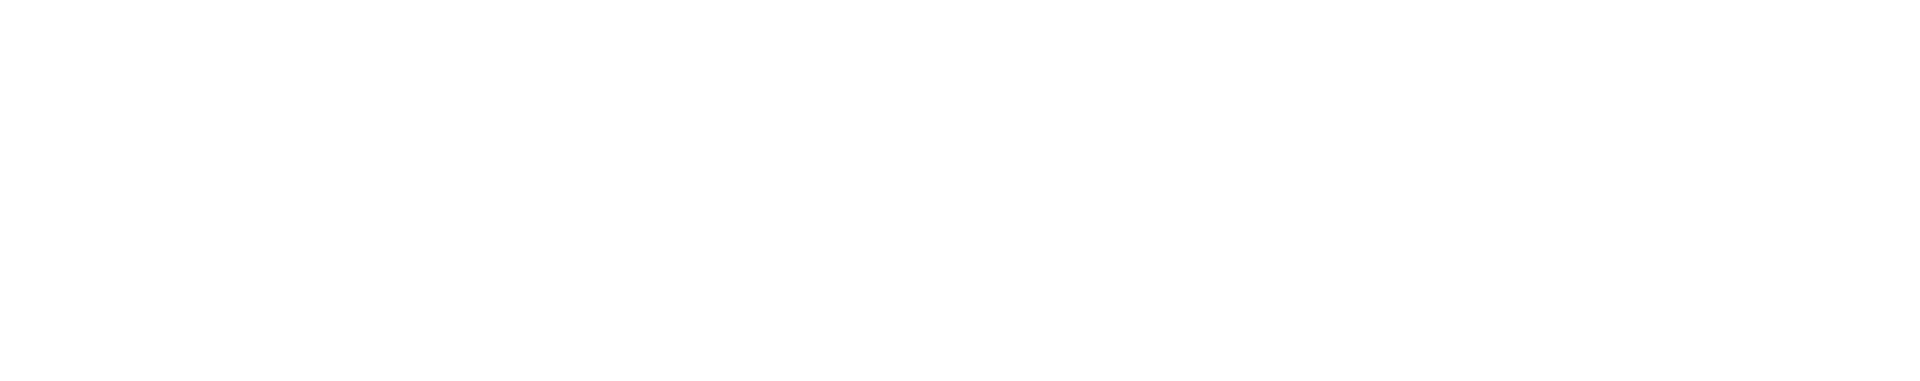 Robingal - Plan de recuperación trasformación y resiliencia